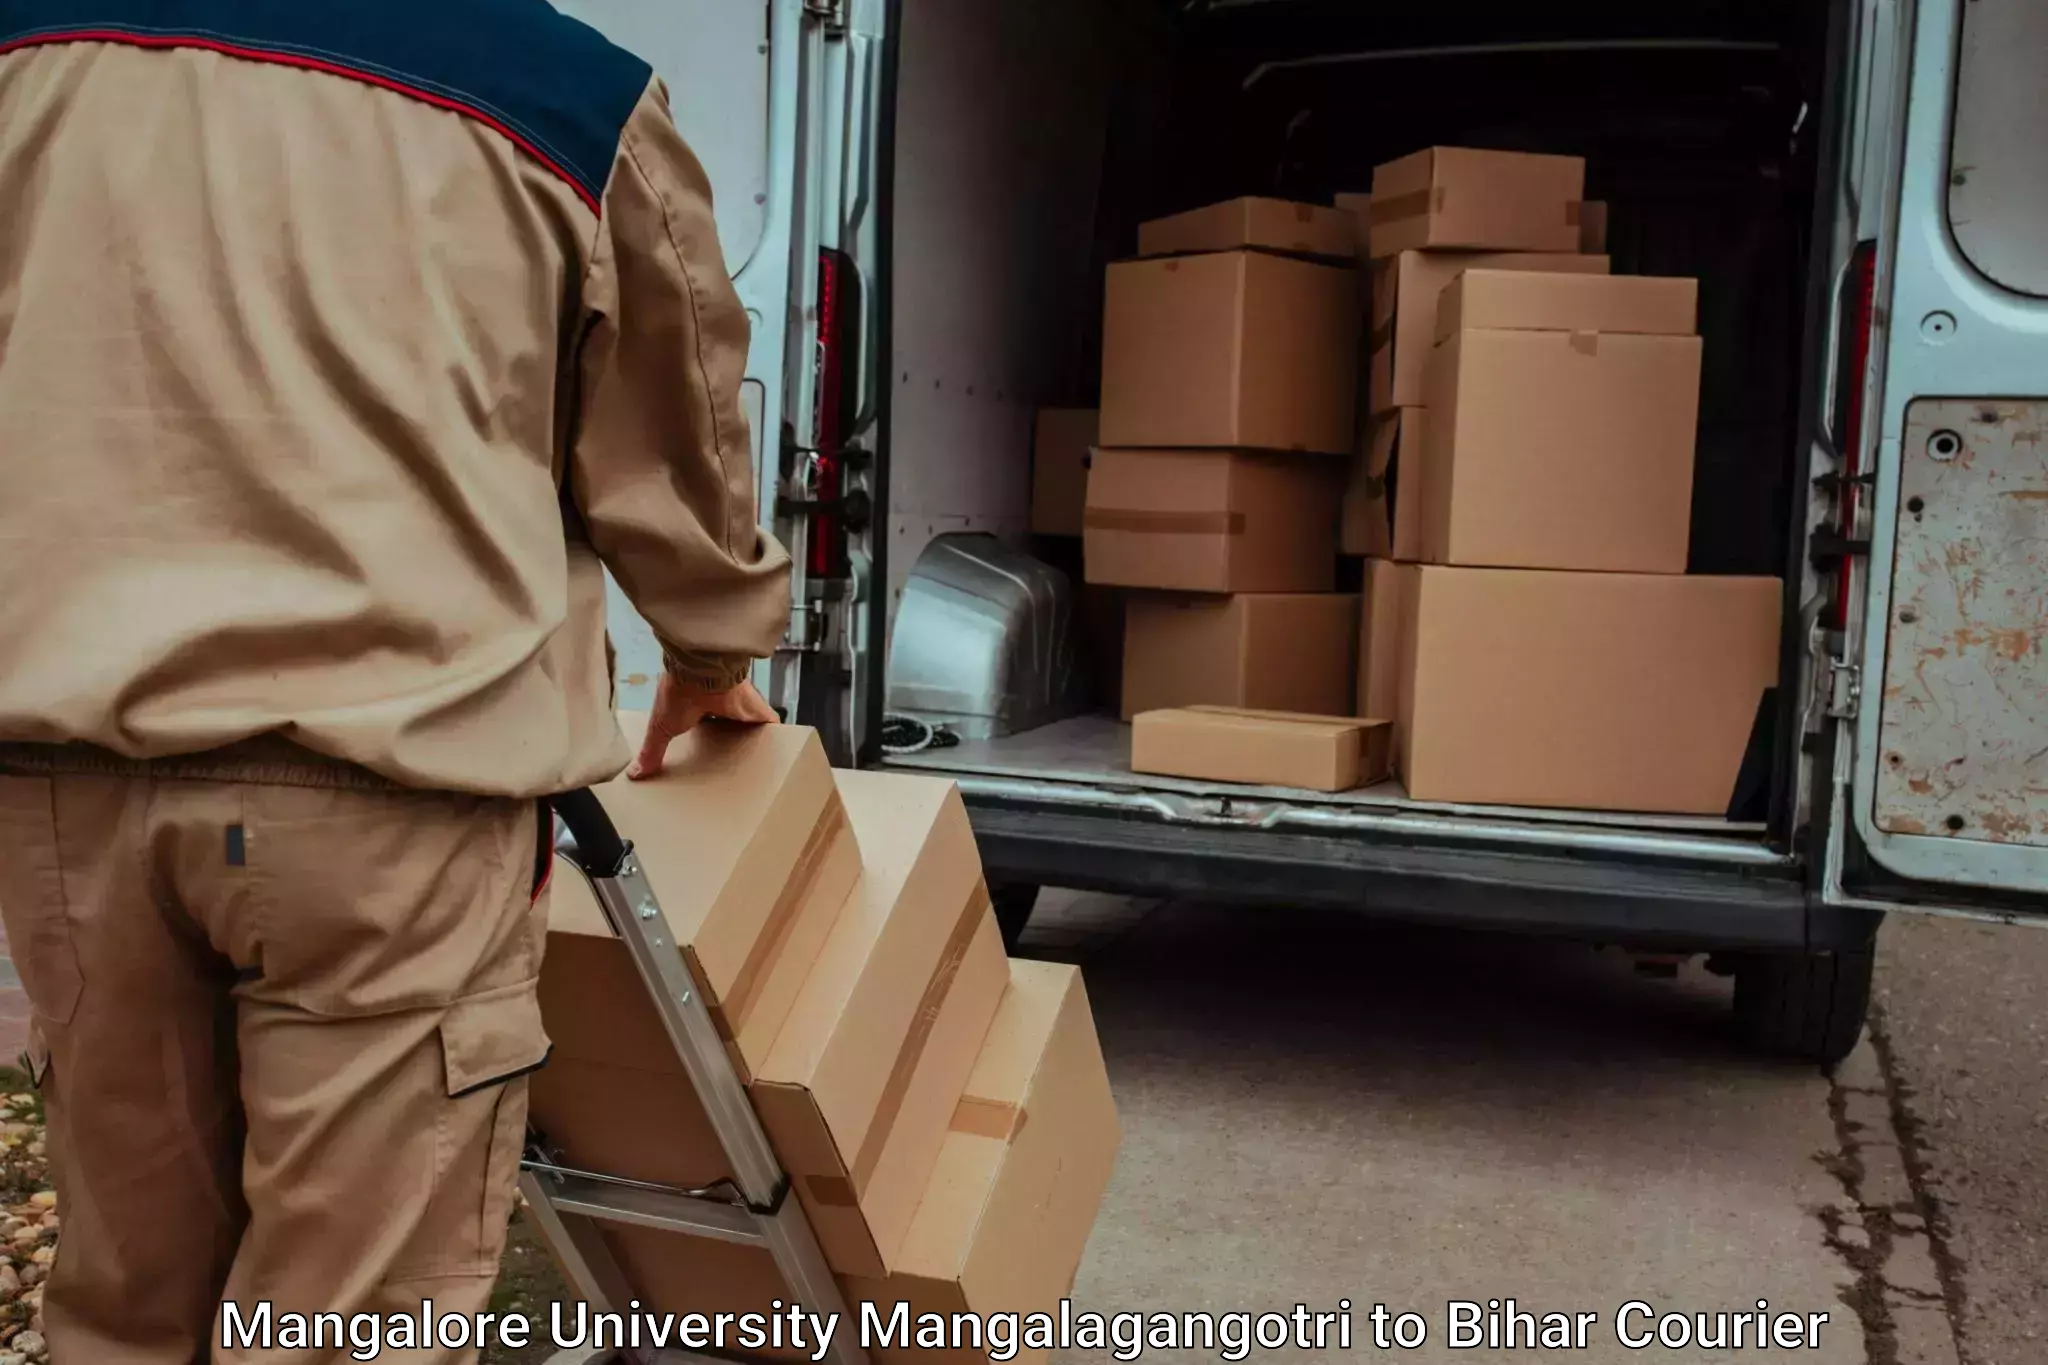 Luggage transport operations Mangalore University Mangalagangotri to Bihar